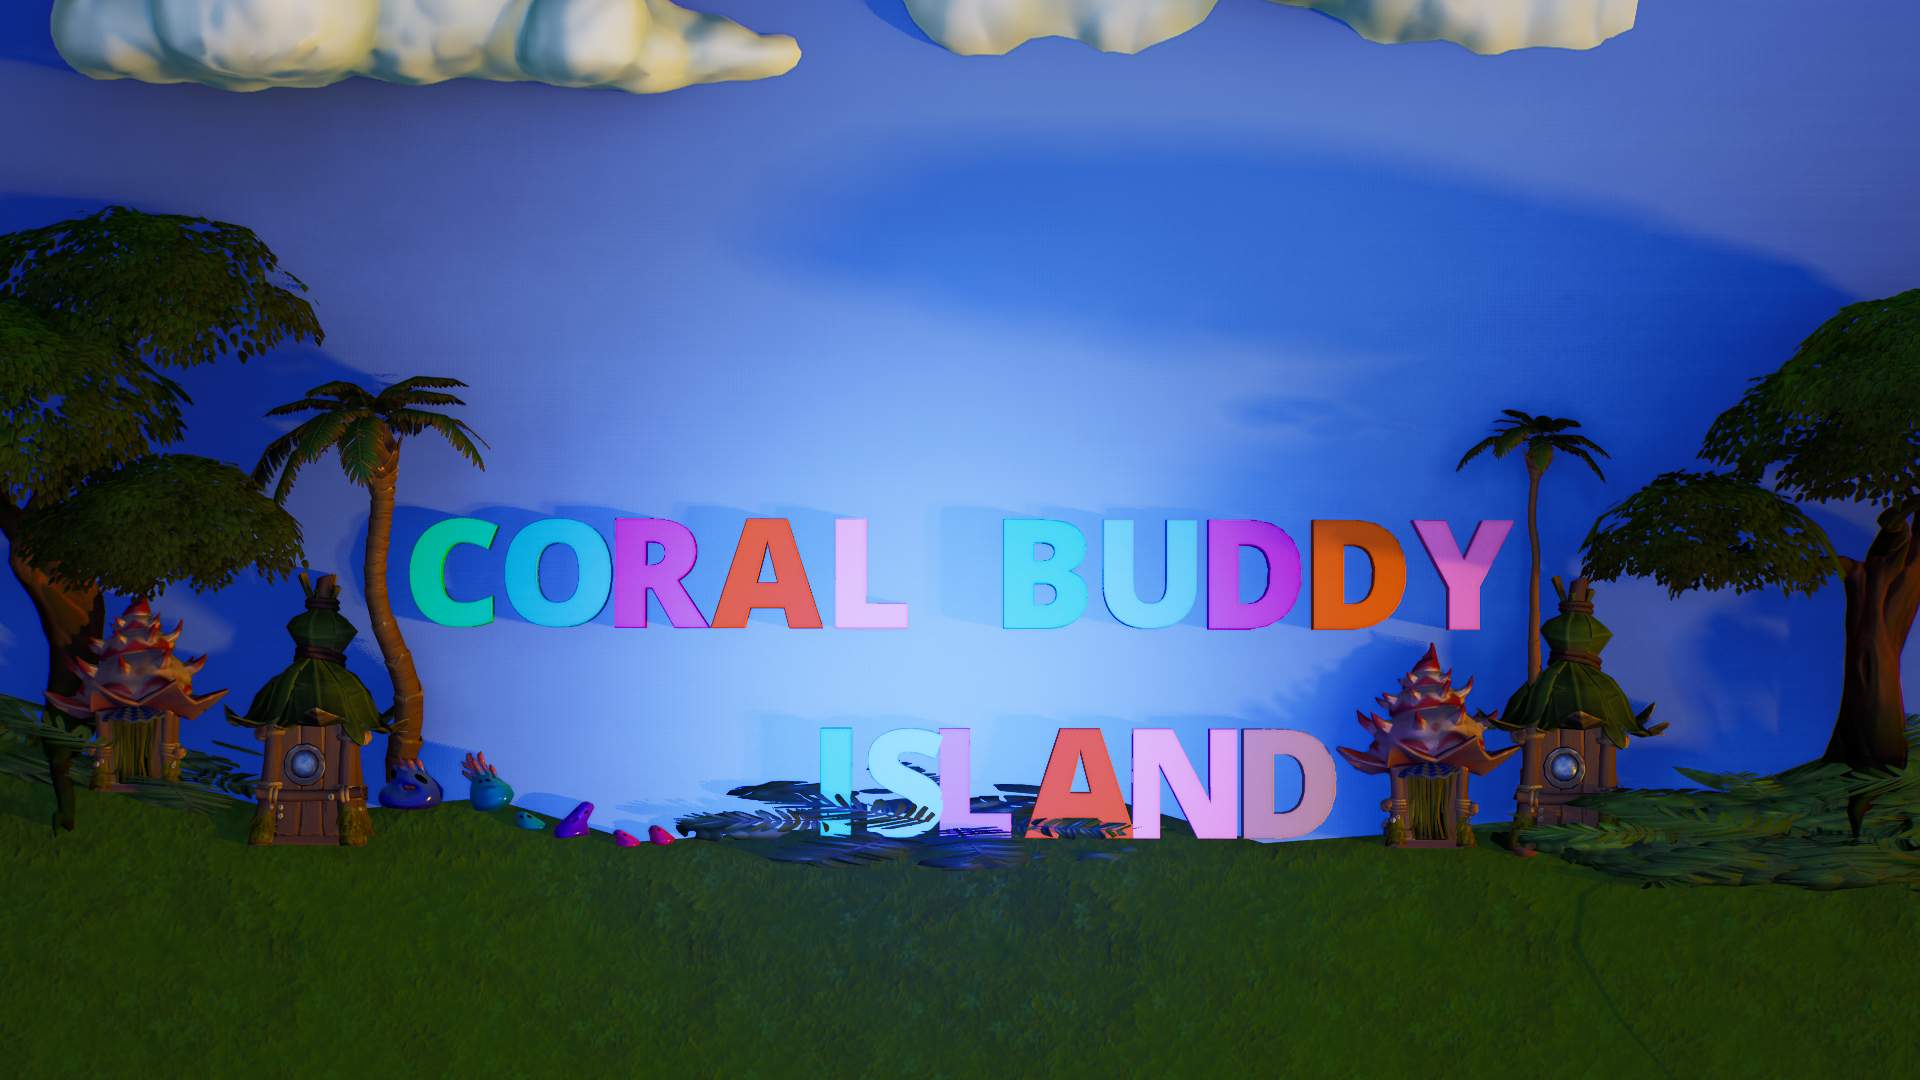 Coral Buddy Island